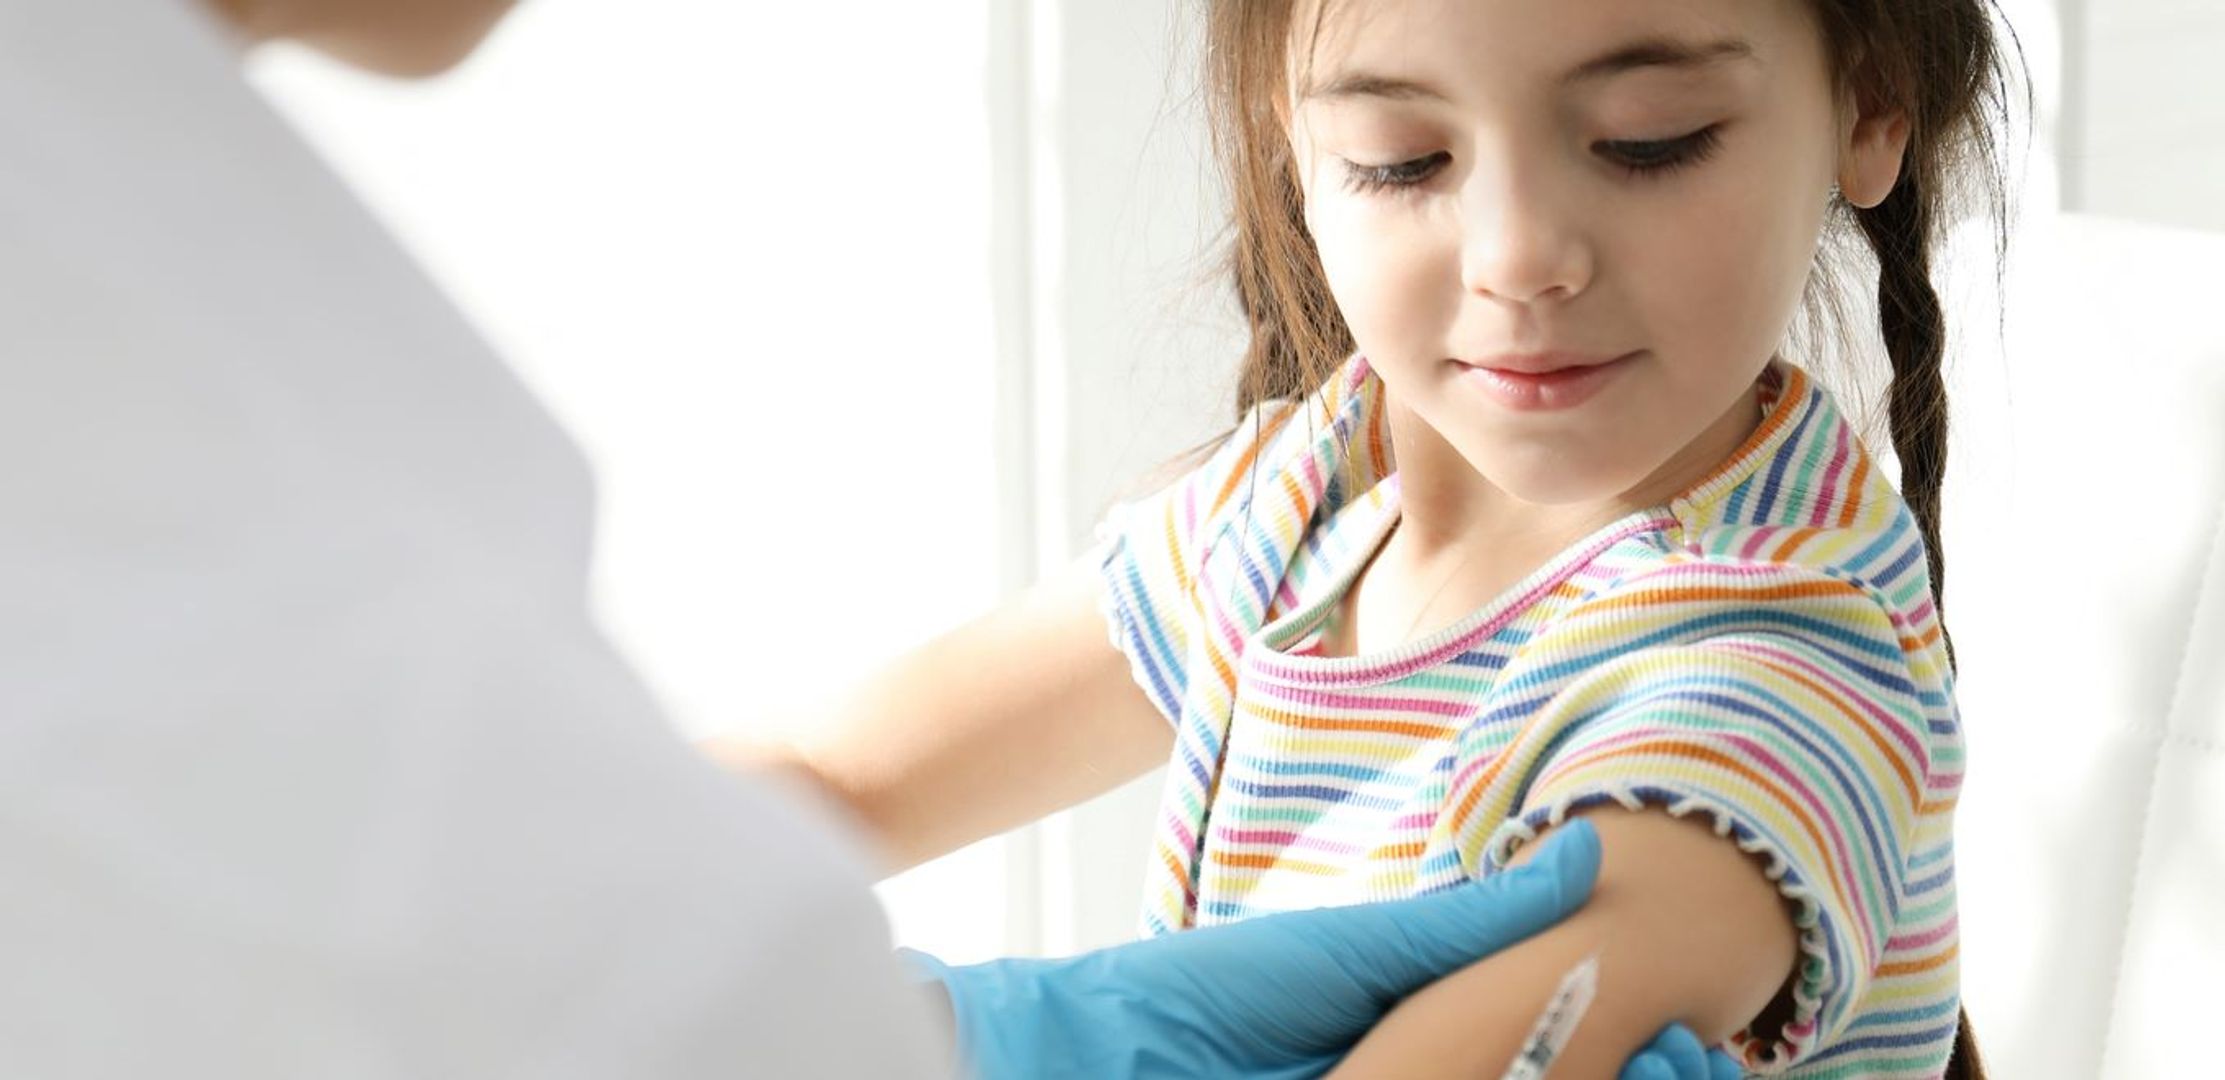 Nova onda de Covid: especialistas reforçam necessidade de vacinar as crianças